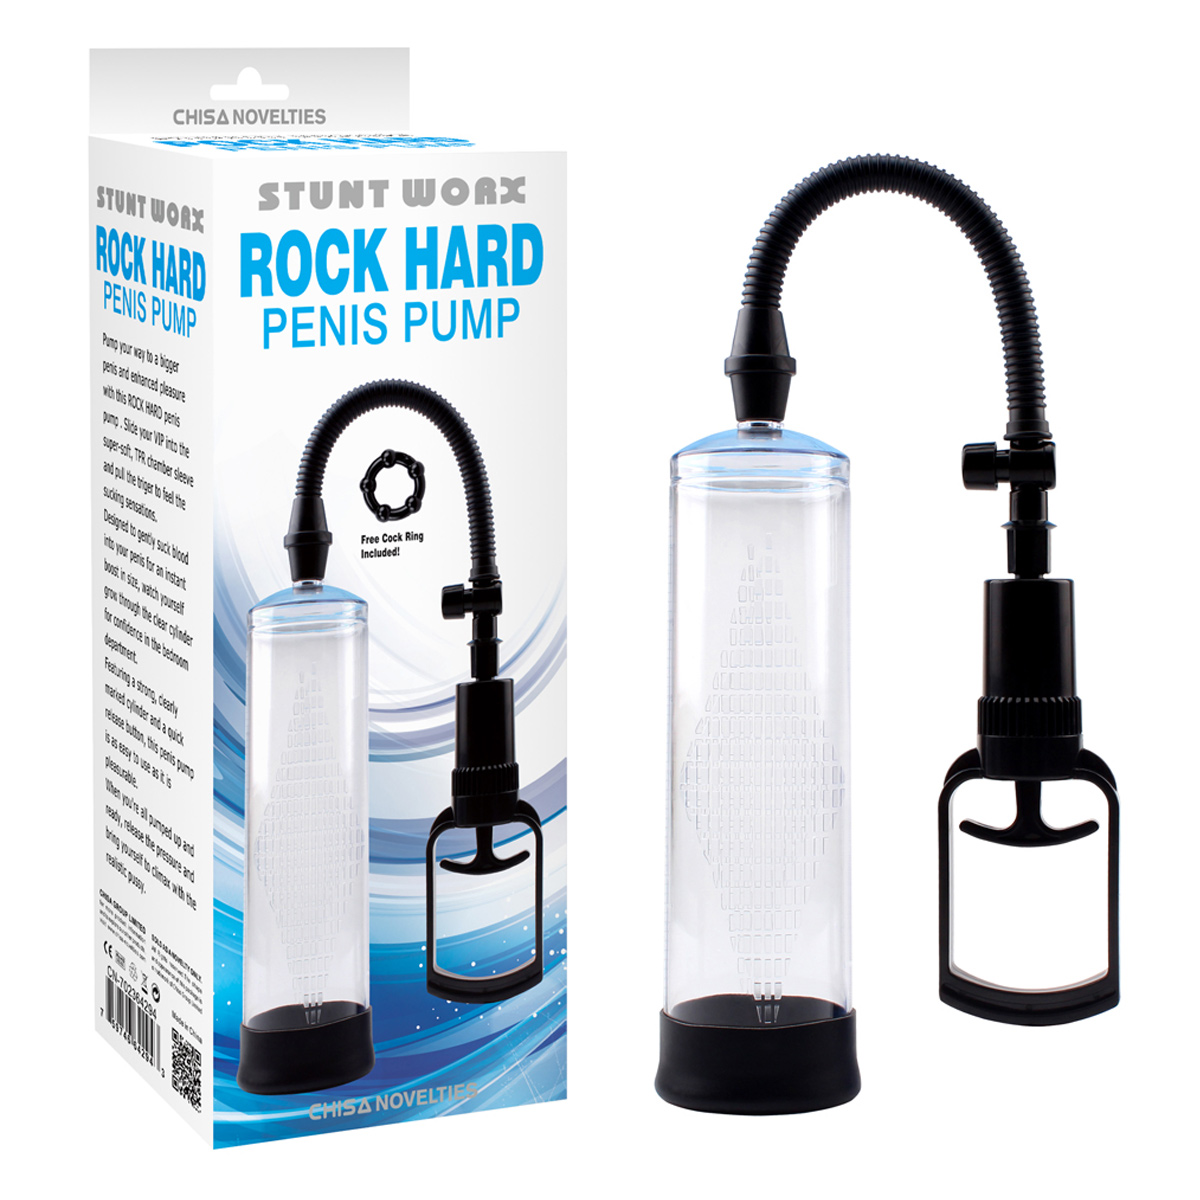 Rock-Hard-Penis-Pump-OPR-2980090-2